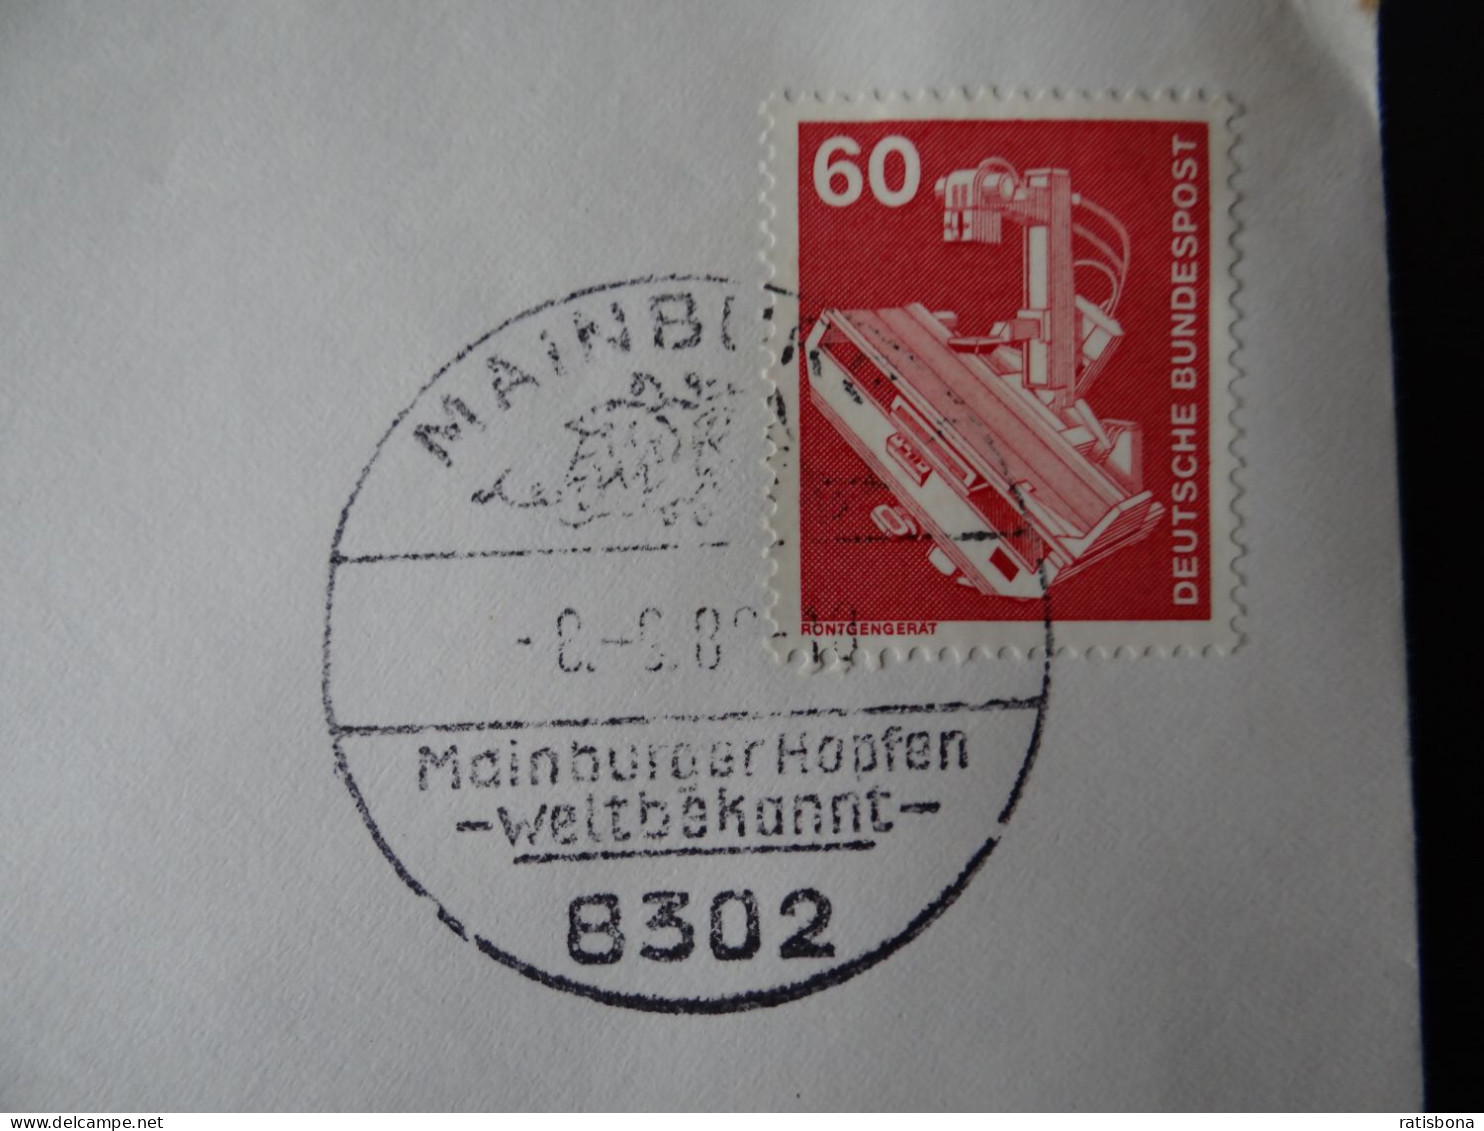 8302 Mainburg - MainburgerHopfen Weltbekannt - Sonderstempel Rund 1980 - Maschinenstempel (EMA)